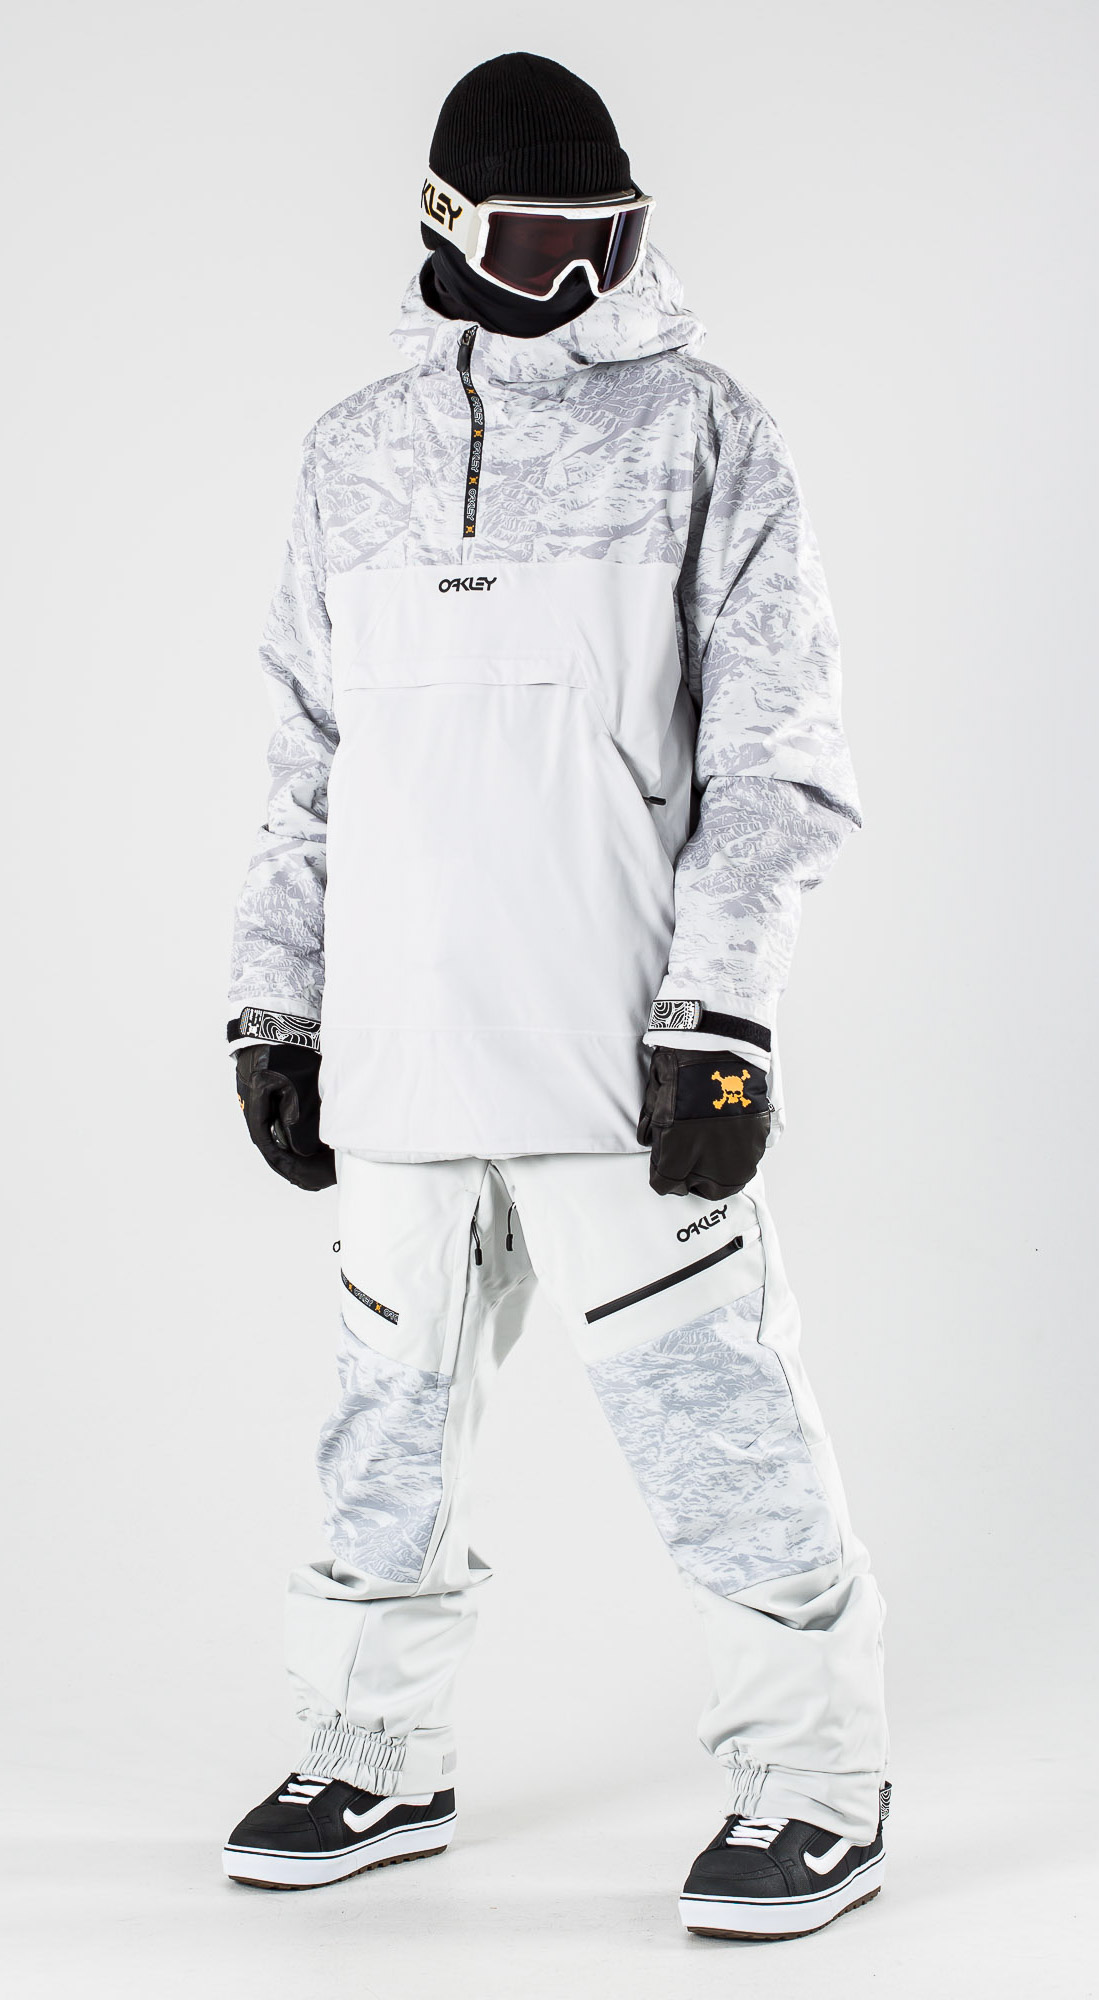 oakley snow suit